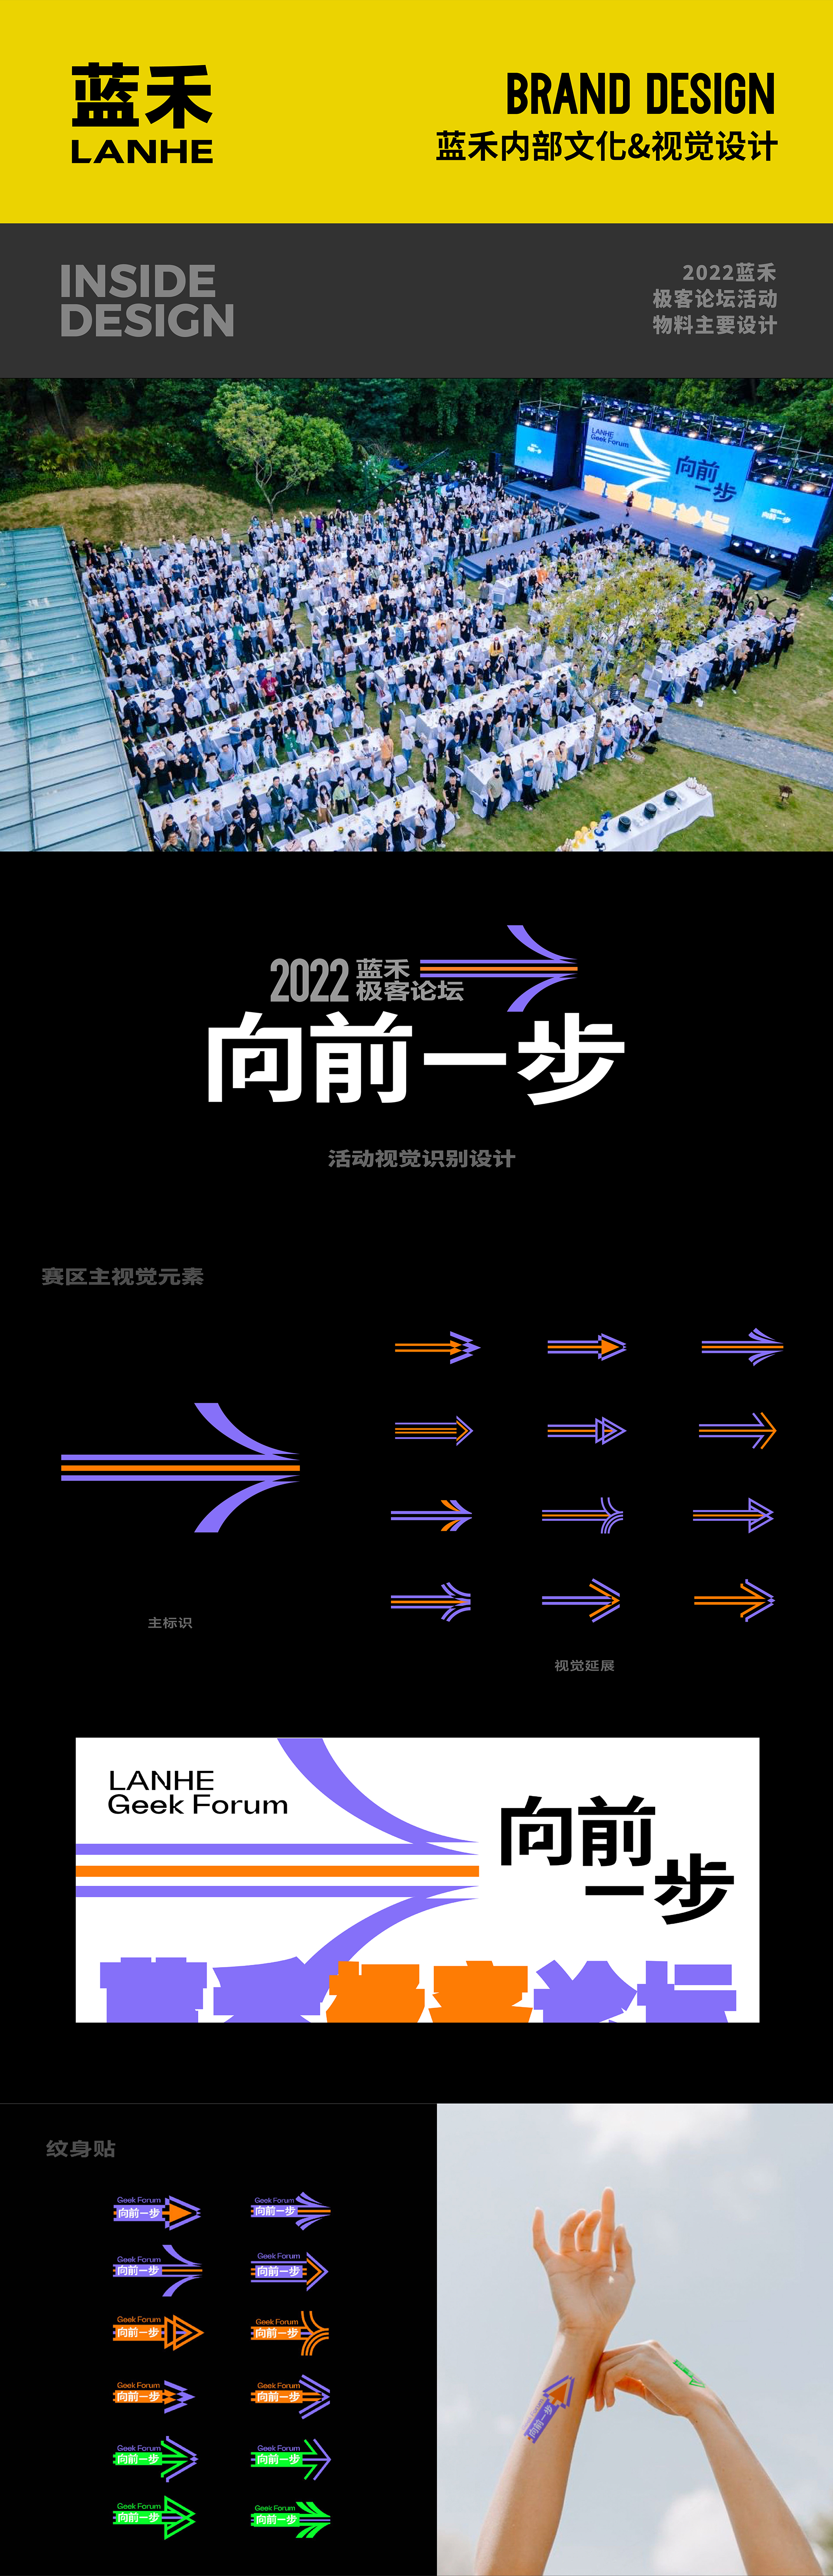 蓝禾—2022极客论坛活动物料设计